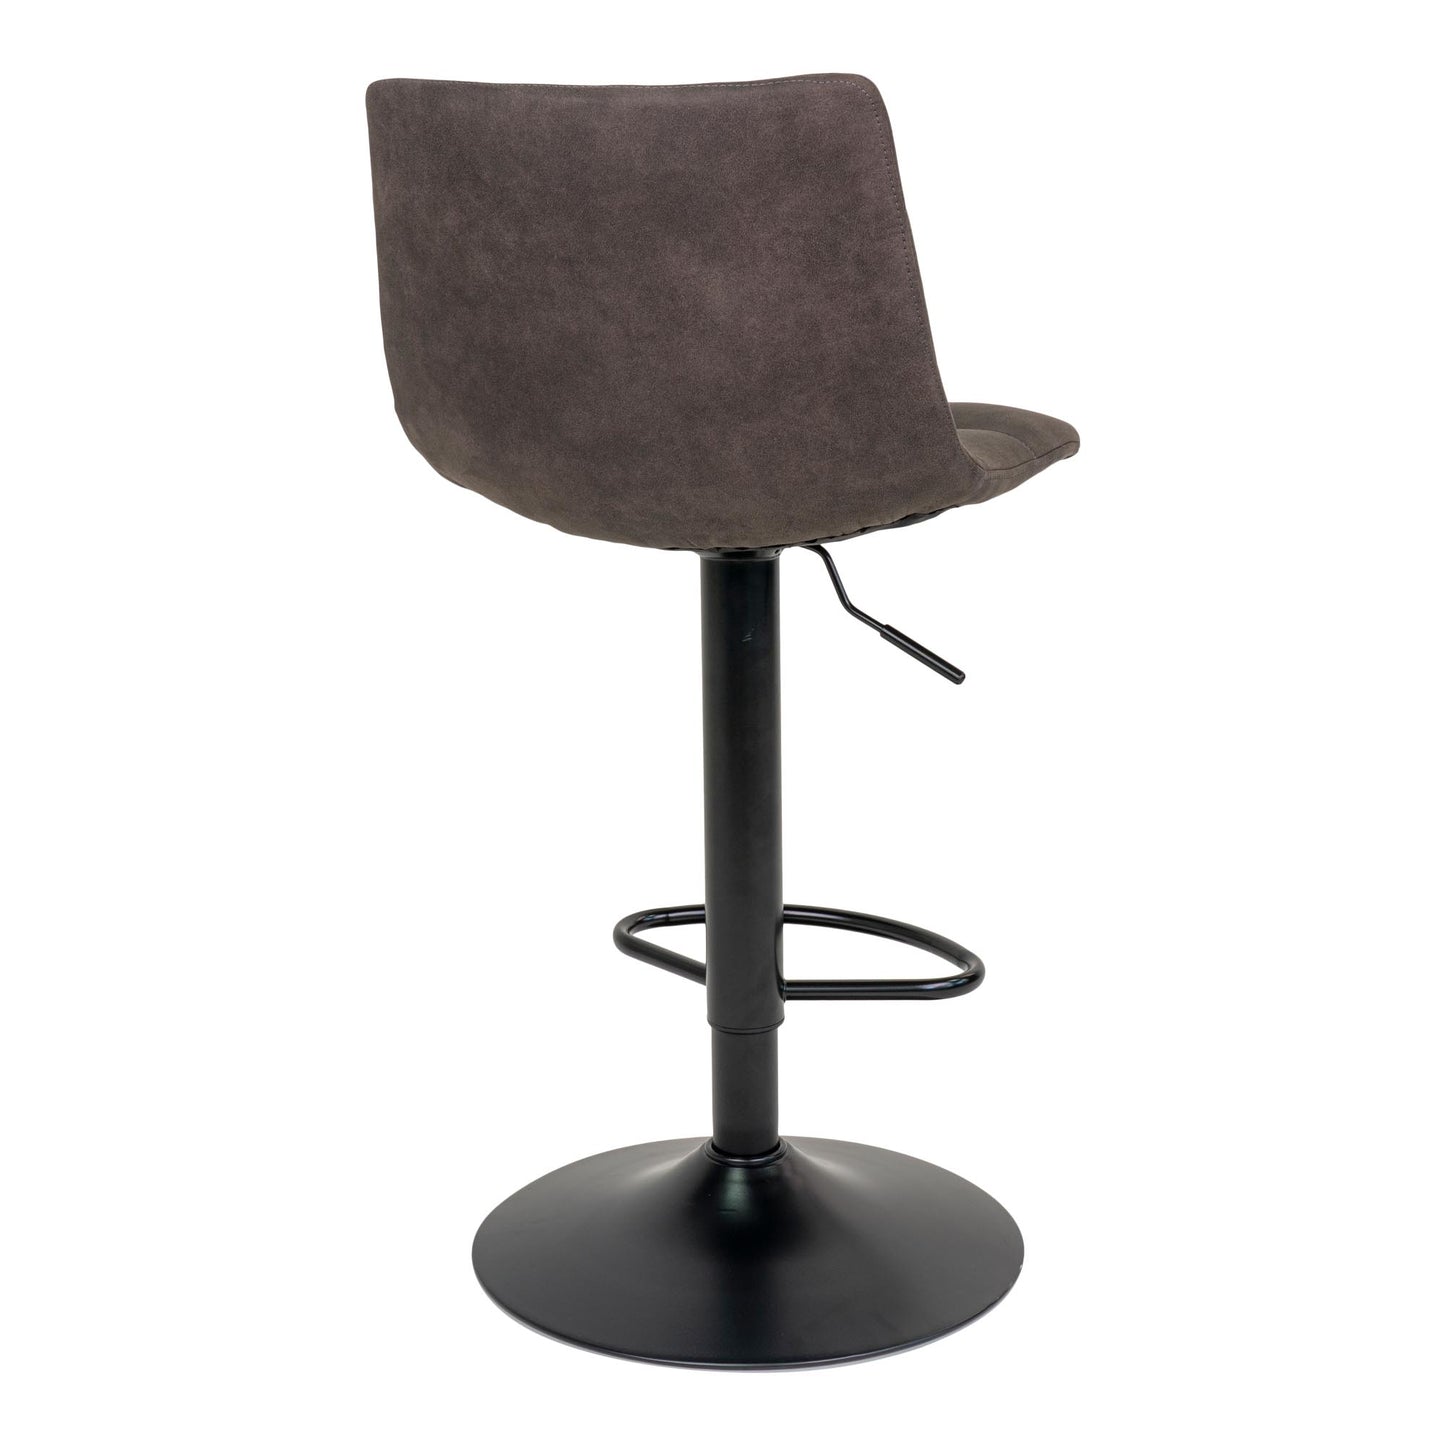 Middelfart Bar Chair - Barstoel in donkergrijs met zwarte poten - set van 2-Stoel-House Nordic-middelfart-bar-chair-bar-chair-in-dark-grey-with-black-legs-5-barstoel, hoge stoel, MIN2, stoel-Barstoel in donkergrijs met zwarte poten Materiaal Microvezel, staal Kleur Grijs-5713917009398-1001302-Cerasus Homestyle